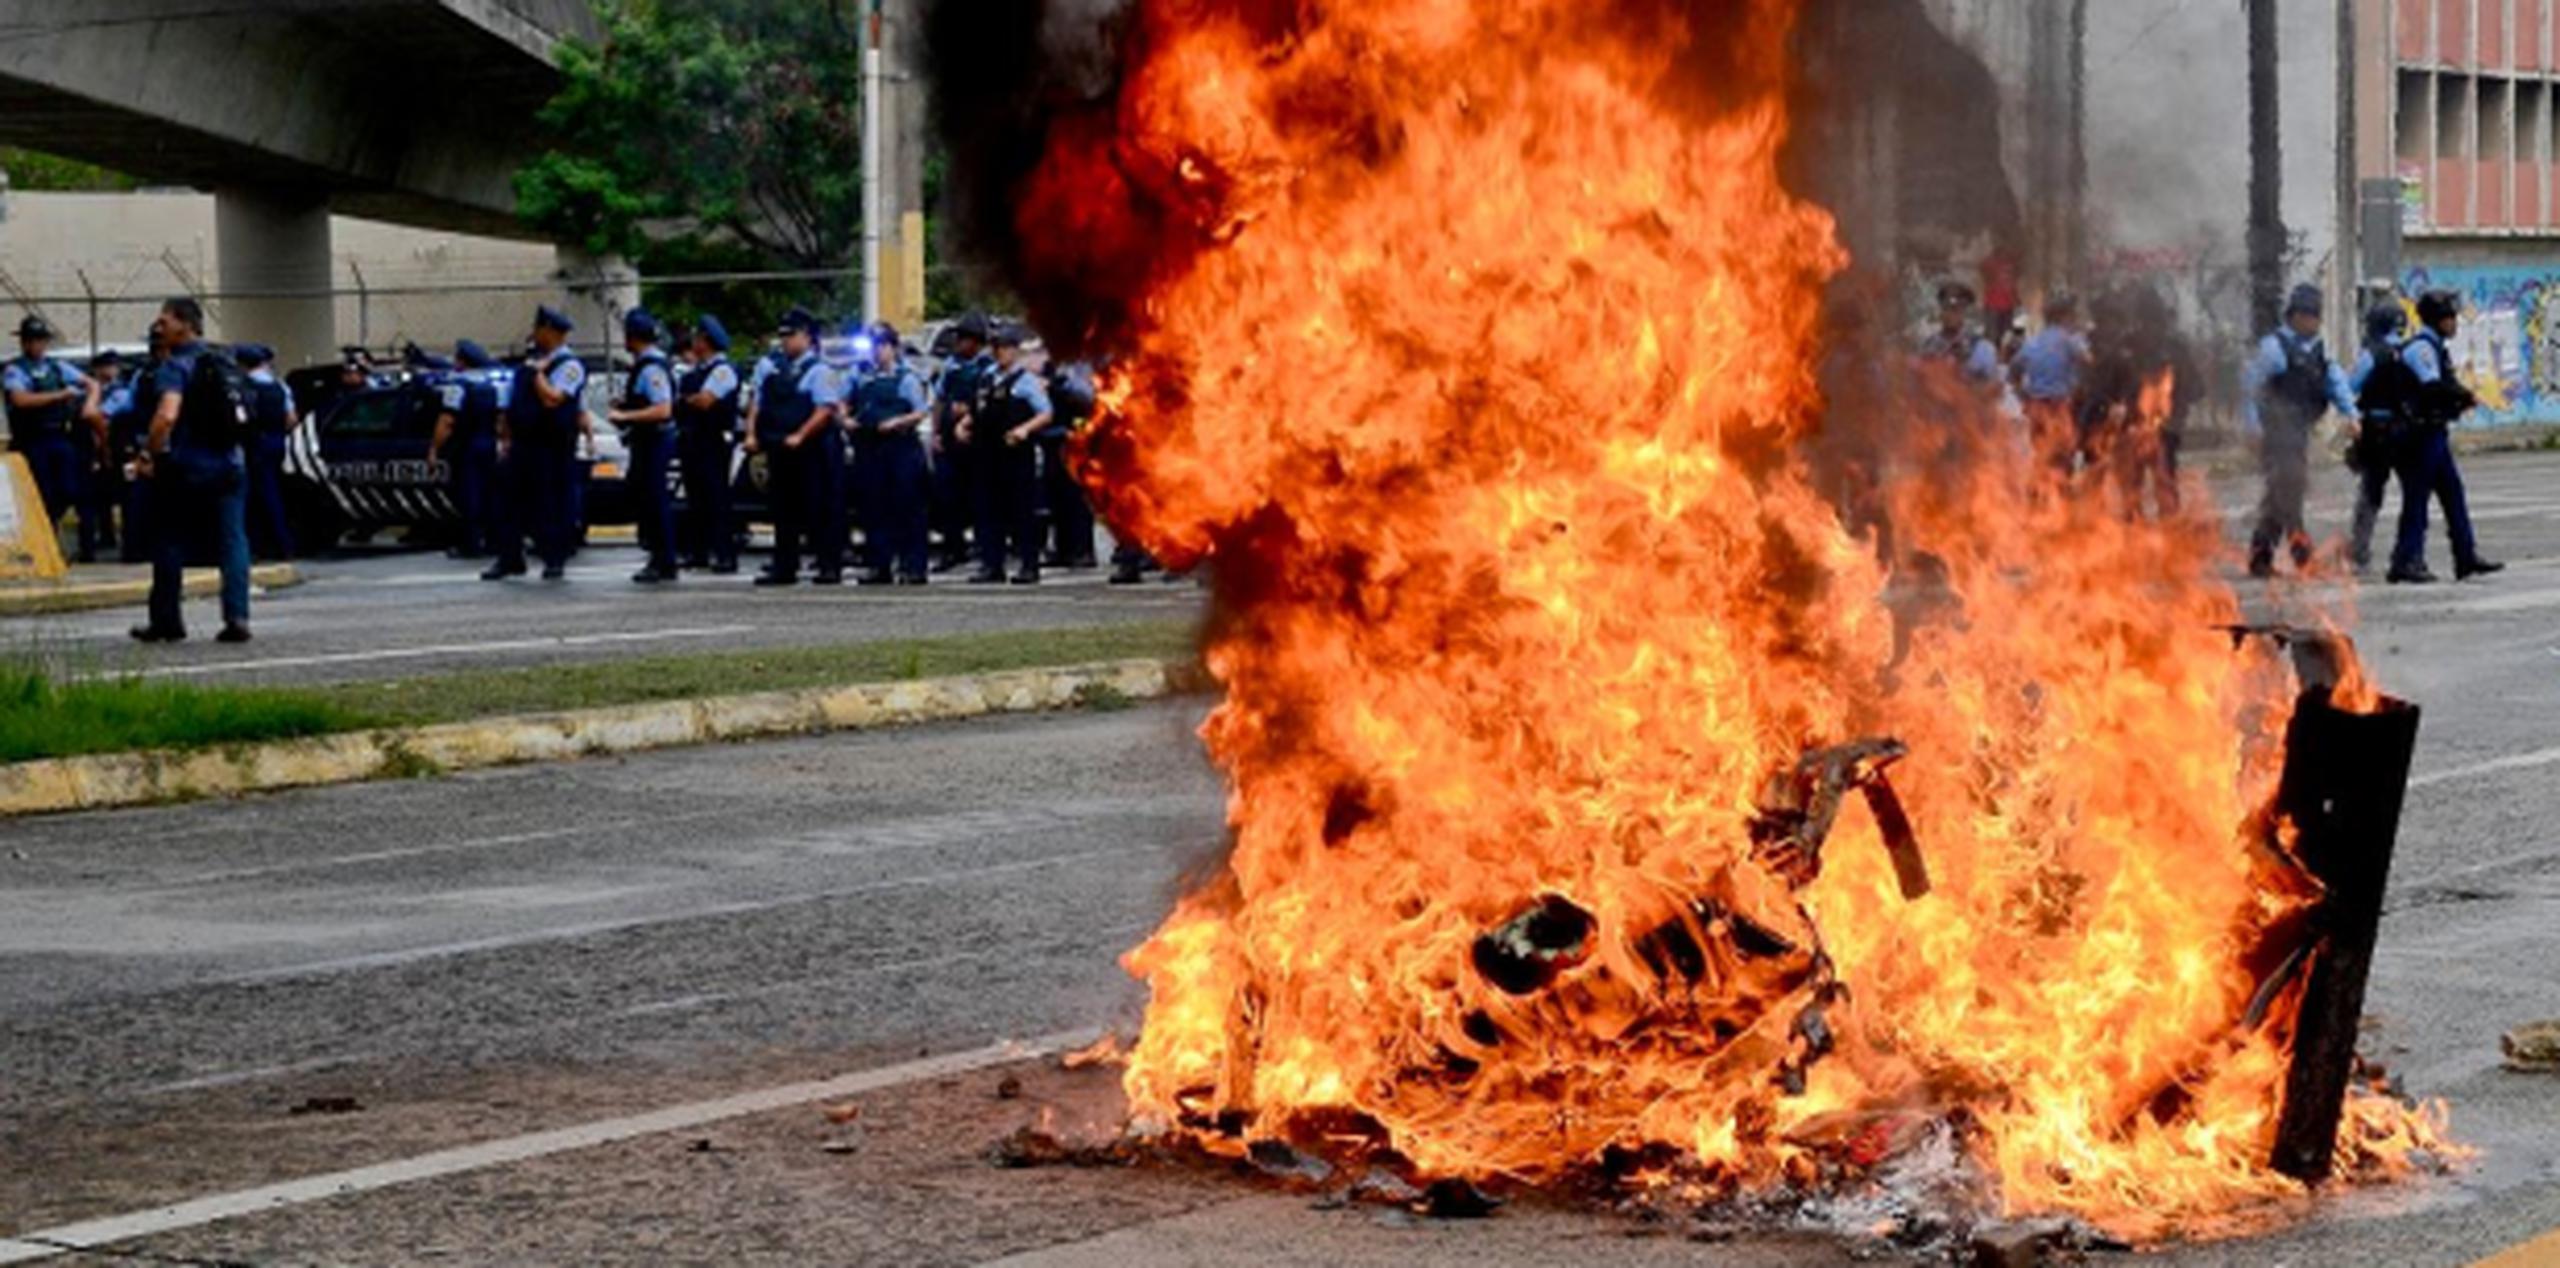 El ambiente era de verbena cuando, por la avenida Muñoz Rivera, se pudo ver una escaramuza entre agentes de la División de Operaciones Tácticas y los manifestantes. (gerald.lopez@gfrmedia.com)